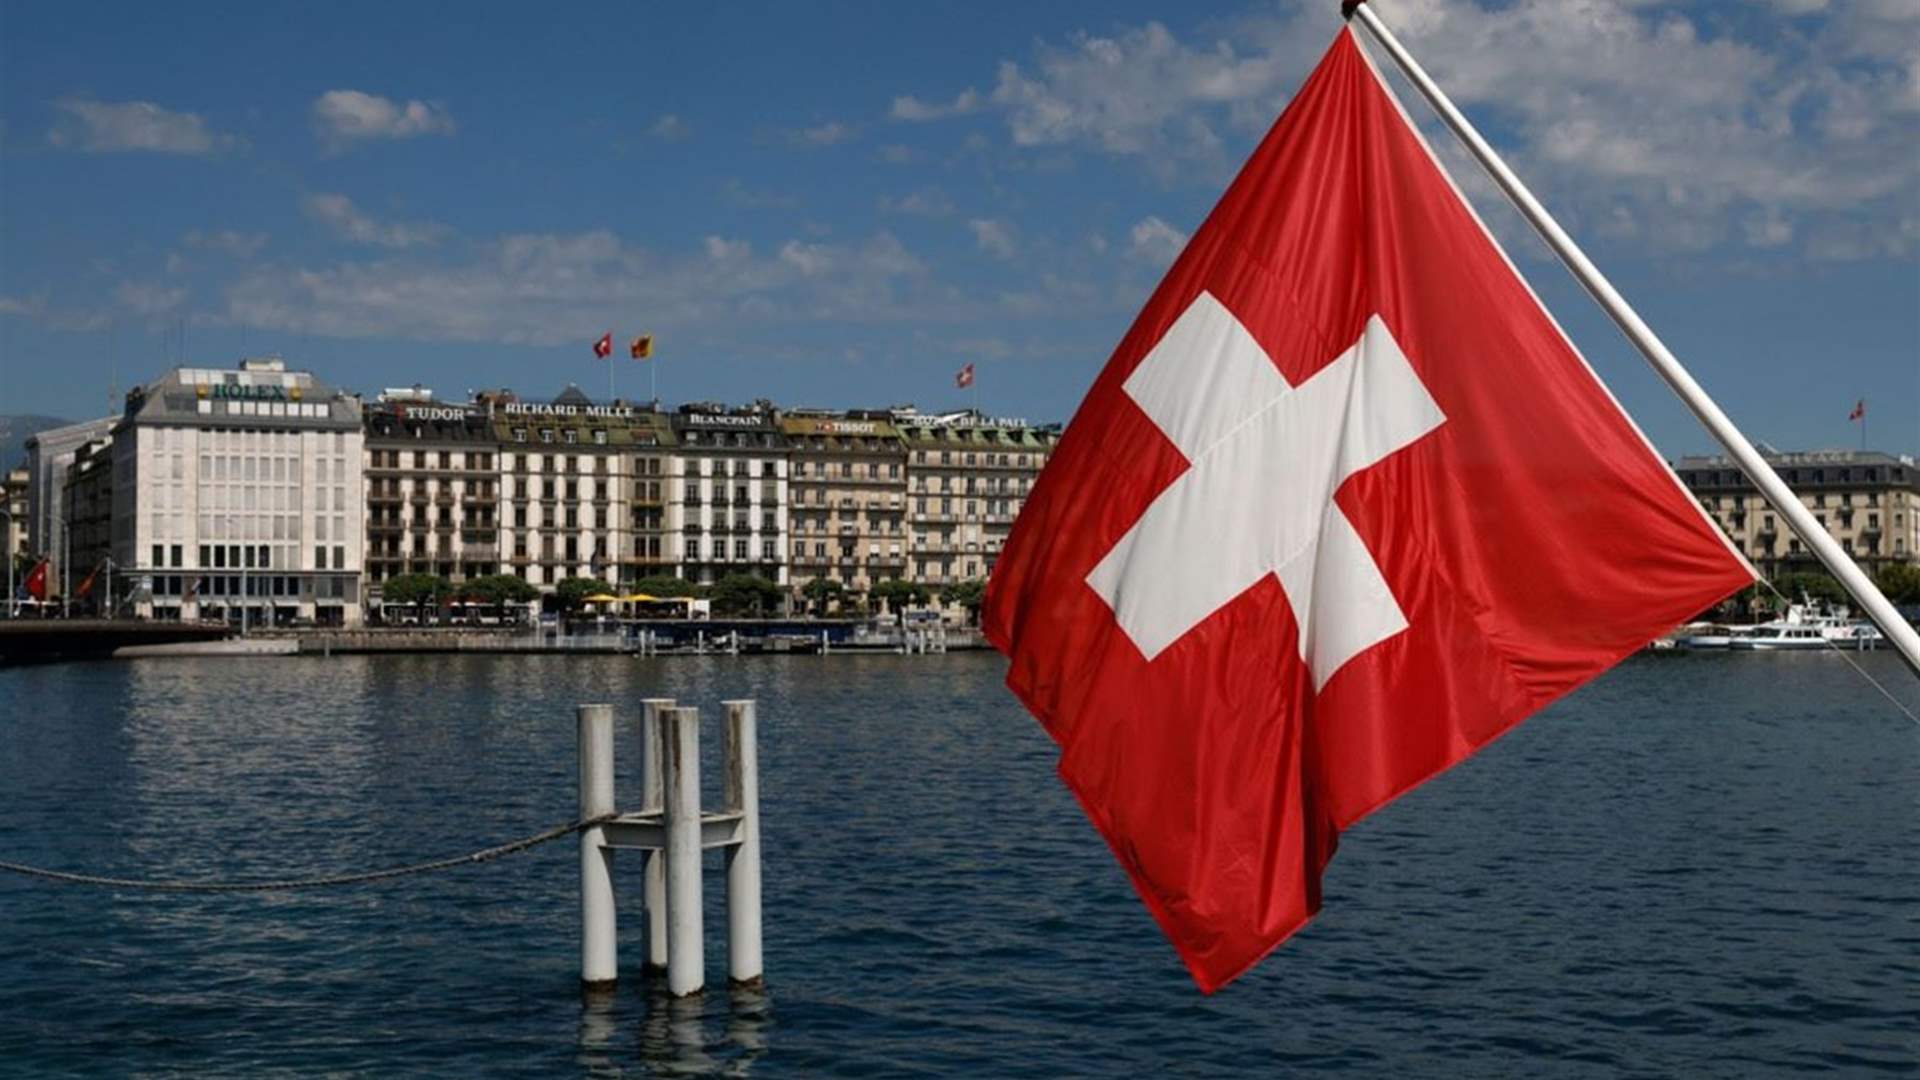 سويسرا تحتجز أكثر من 8 مليارات دولار من أصول البنك المركزي الروسي 